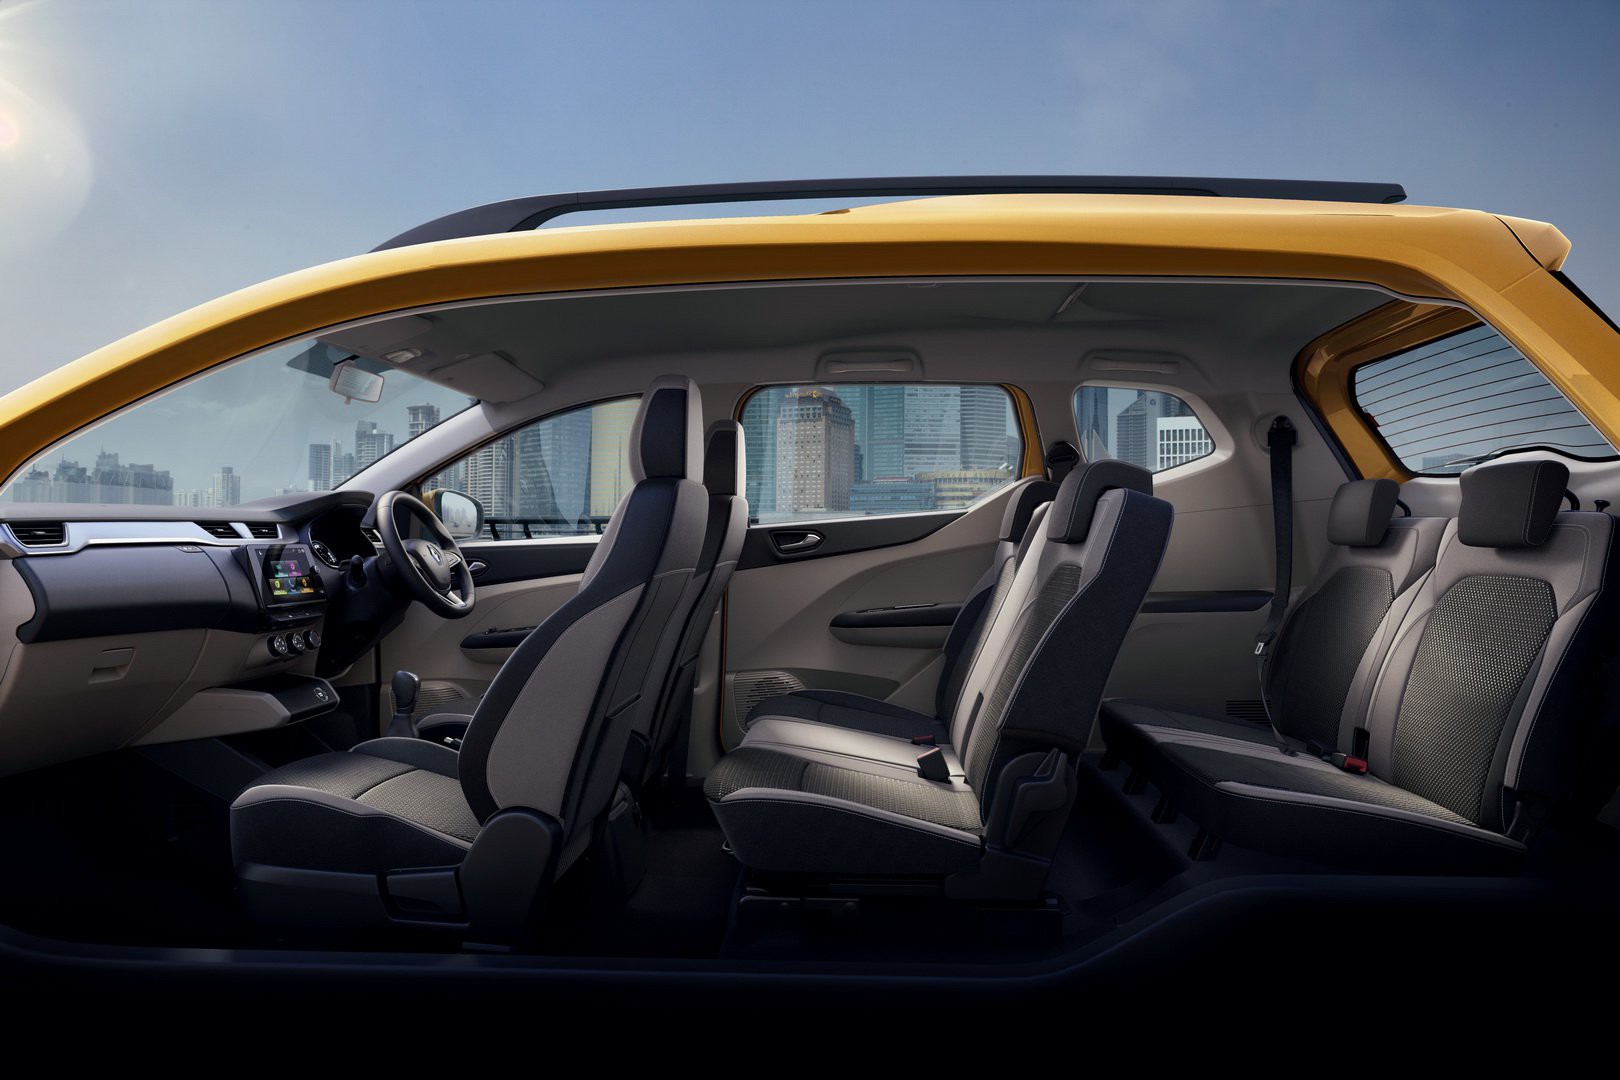 SUV 7 chỗ của Renault giá chỉ 200 triệu đồng được trang bị những tính năng gì?